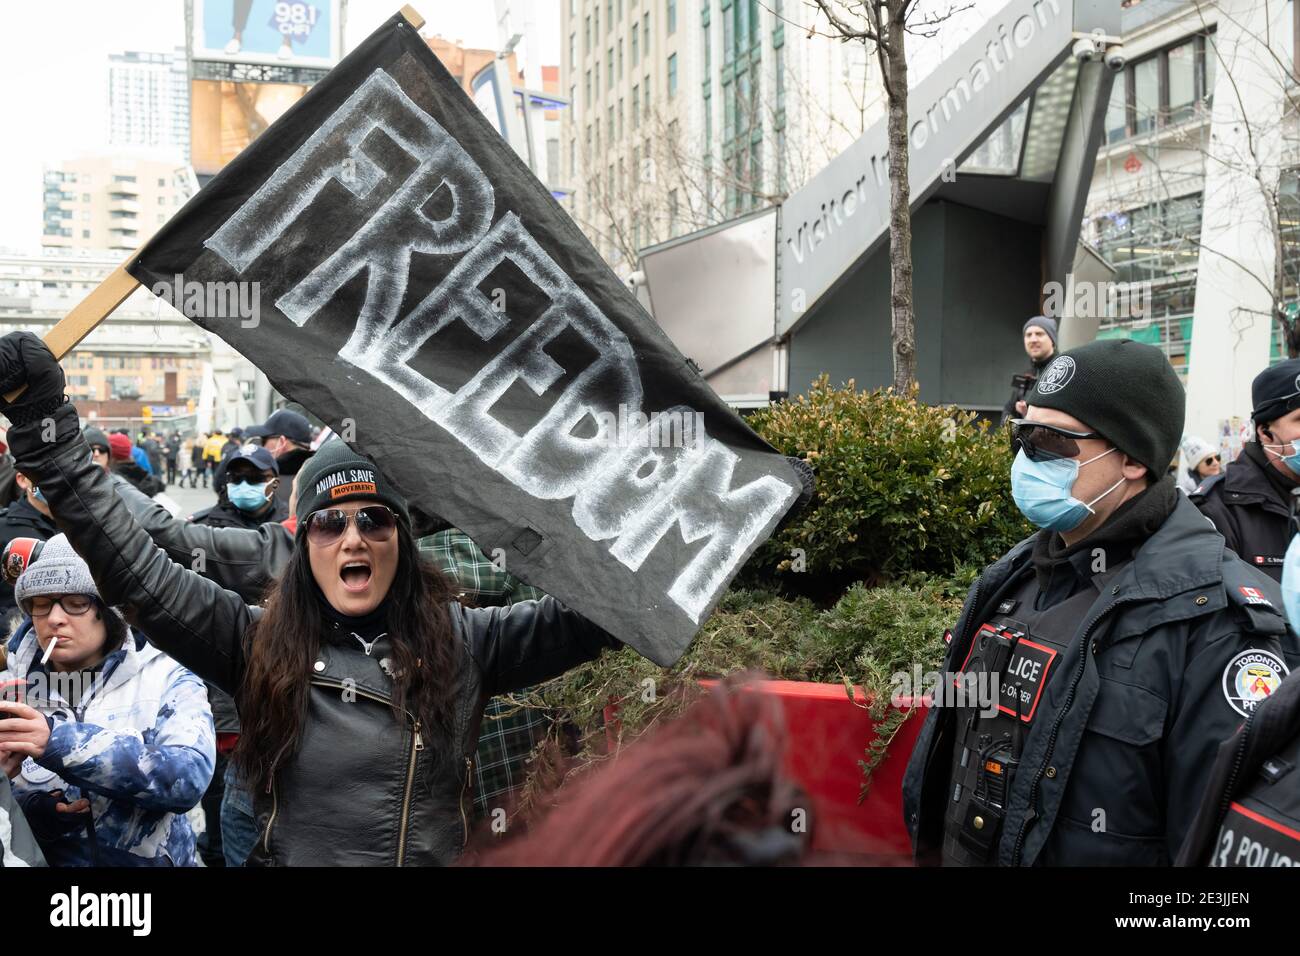 Una donna chiede la libertà mentre la polizia inizia ad arrestare i manifestanti in una protesta contro i blocchi COVID-19 a Toronto, Canada. Foto Stock